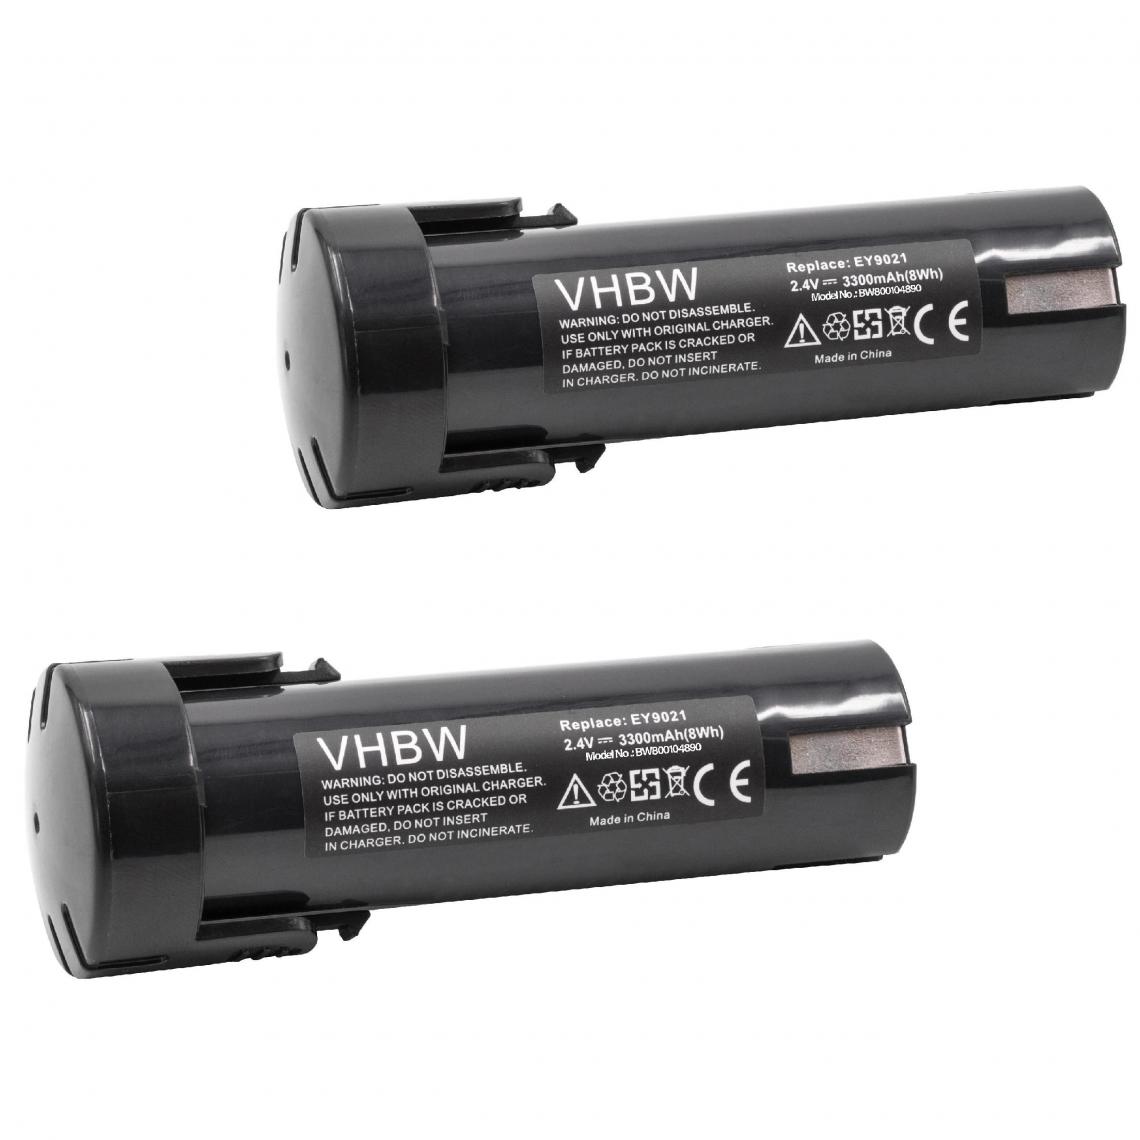 Vhbw - vhbw 2x Batteries compatible avec National 6538-1, 6539-6, 6540-1, 6545-6, 6546-6, 6547-1 outil électrique (3300 mAh, NiMH, 2,4 V) - Accessoires vissage, perçage